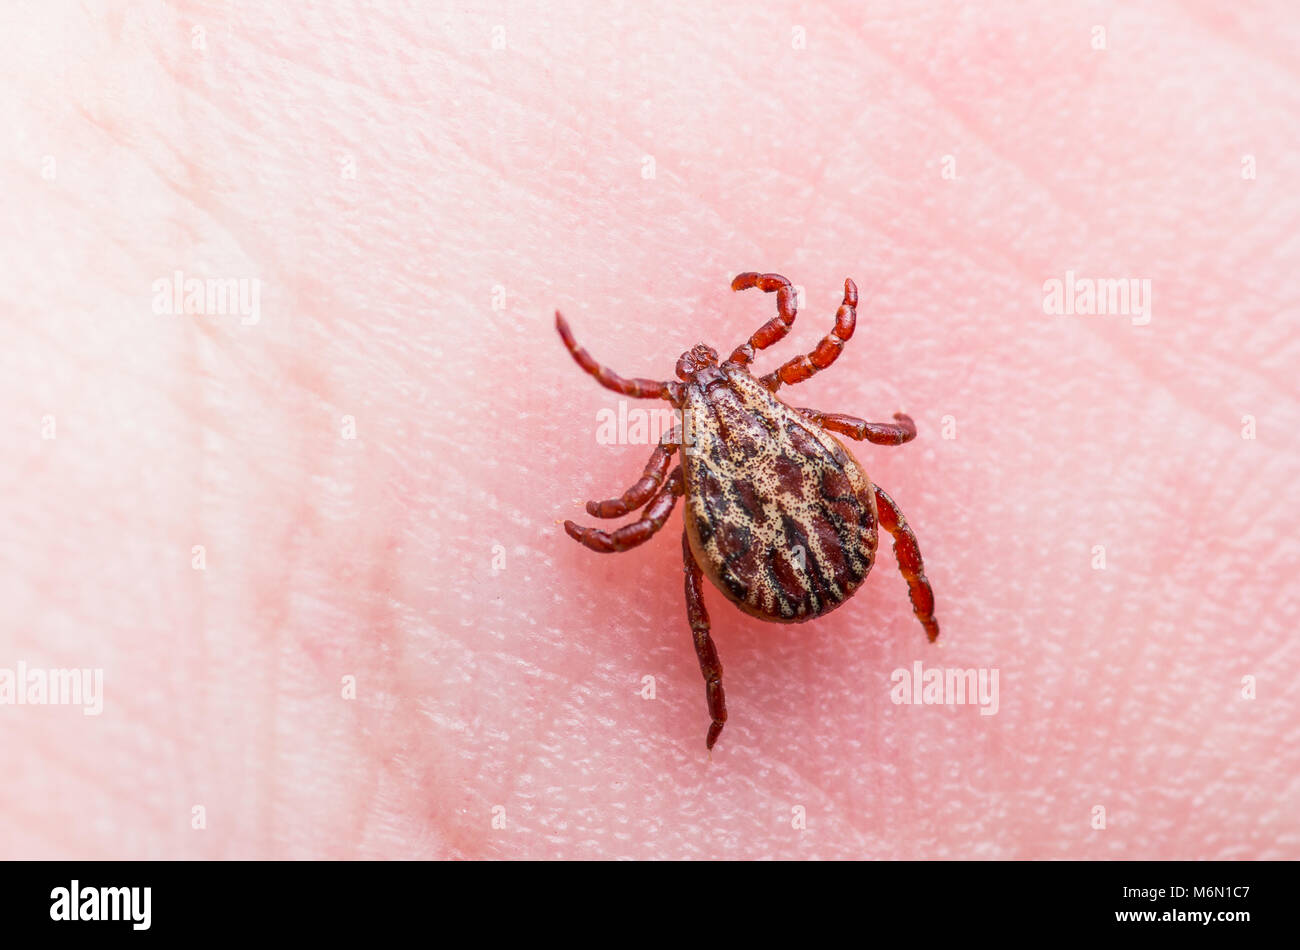 Enzephalitis Virus oder Borreliose infizierte Zecke Spinne Insekt auf der  Haut Stockfotografie - Alamy